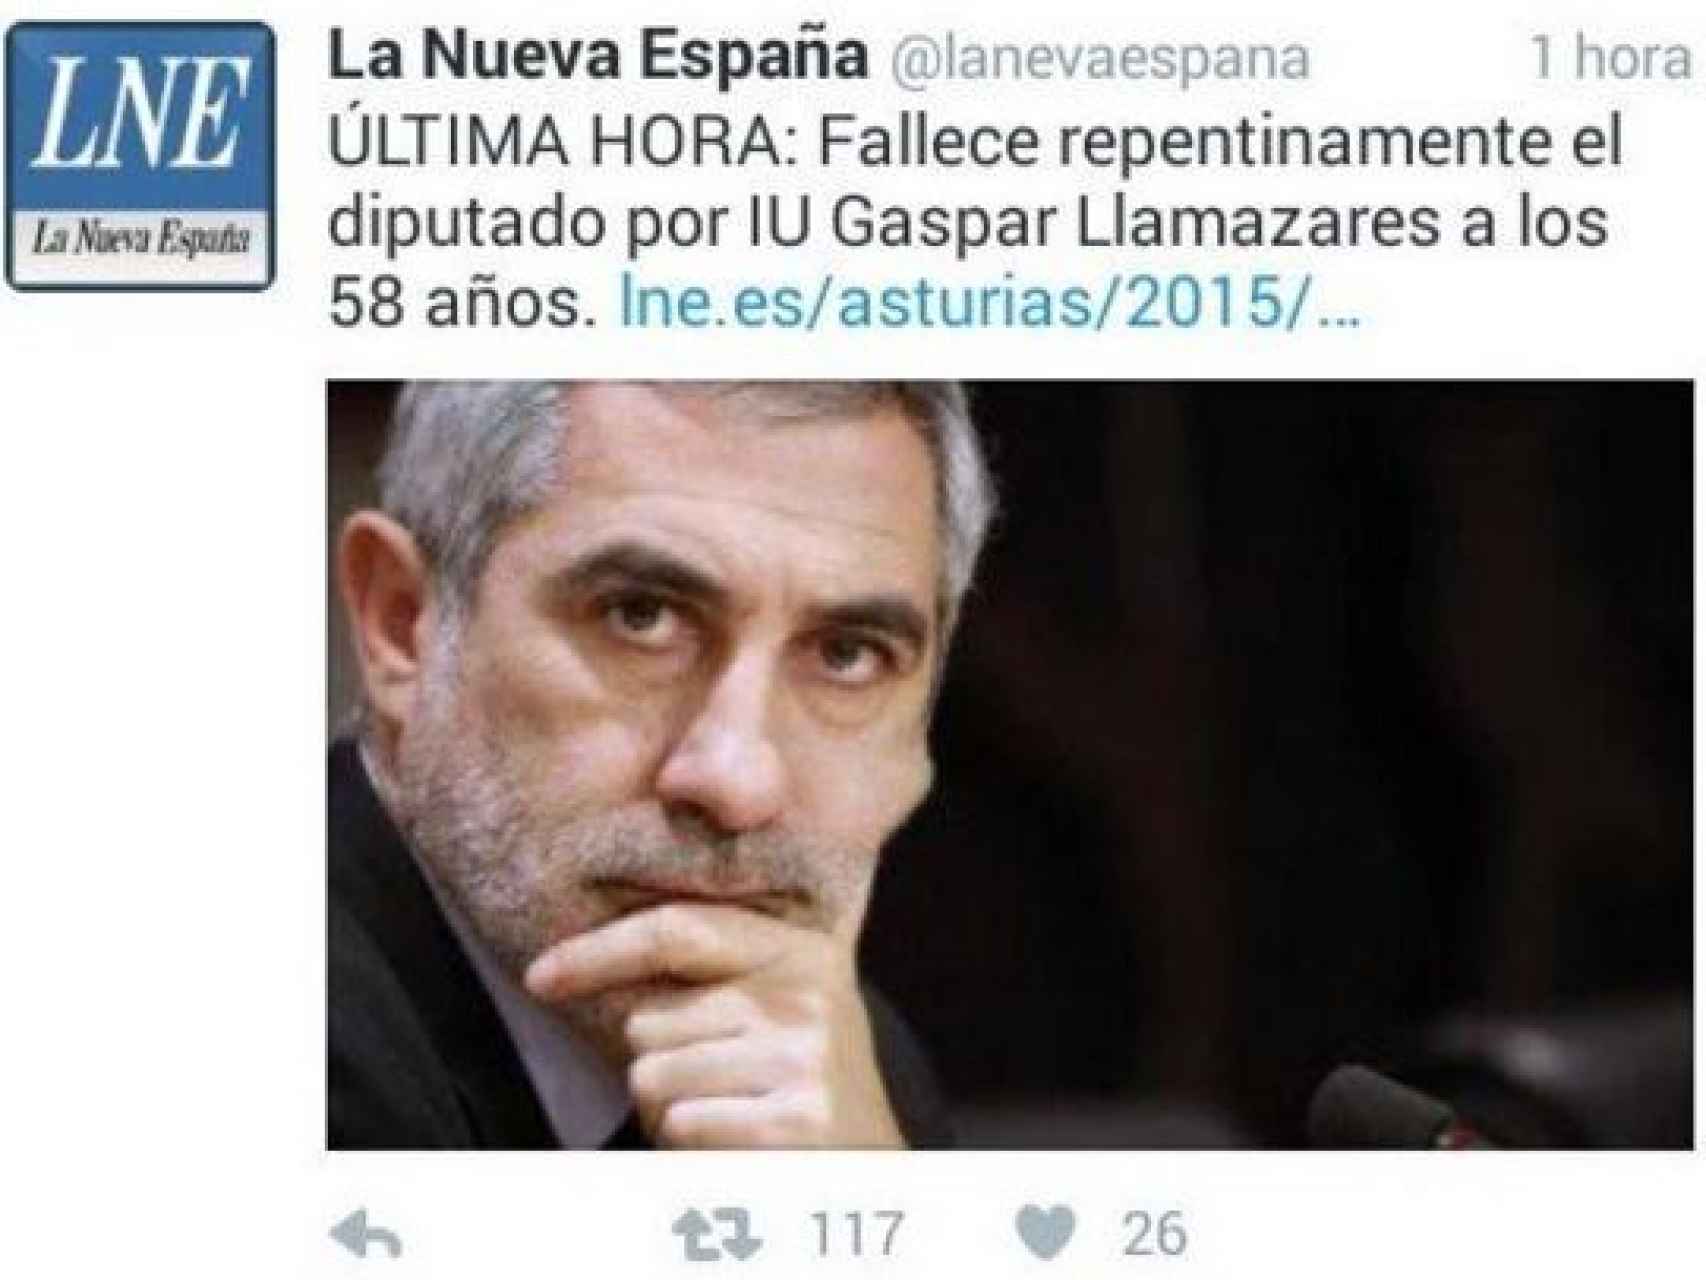 El tuit de la cuenta falsa anunciando la muerte de Gaspar Llamazares.